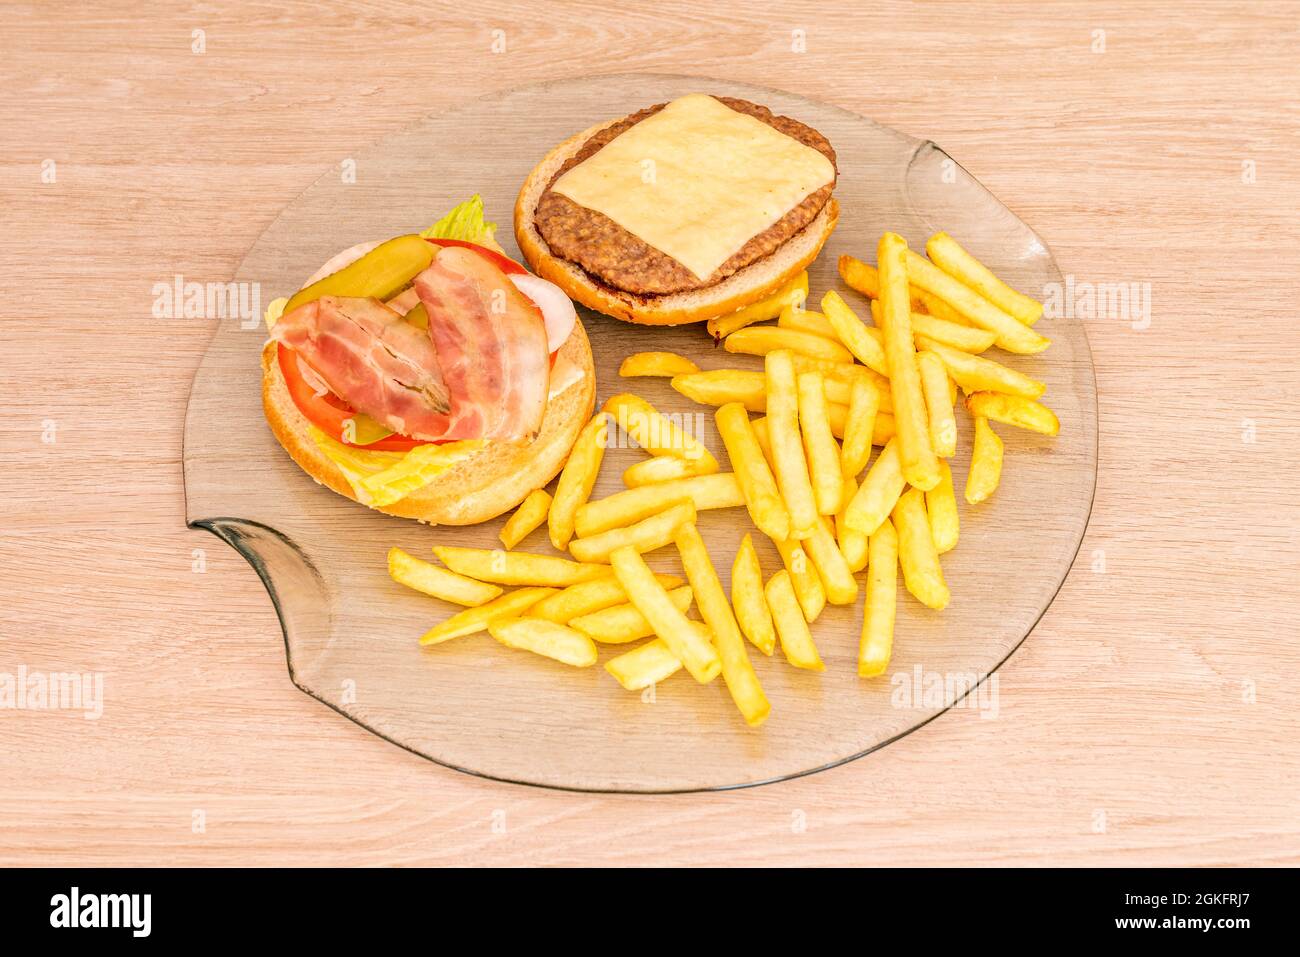 Der klassische Hamburger wird offen auf einer transparenten Glasplatte mit Pommes frites präsentiert Stockfoto